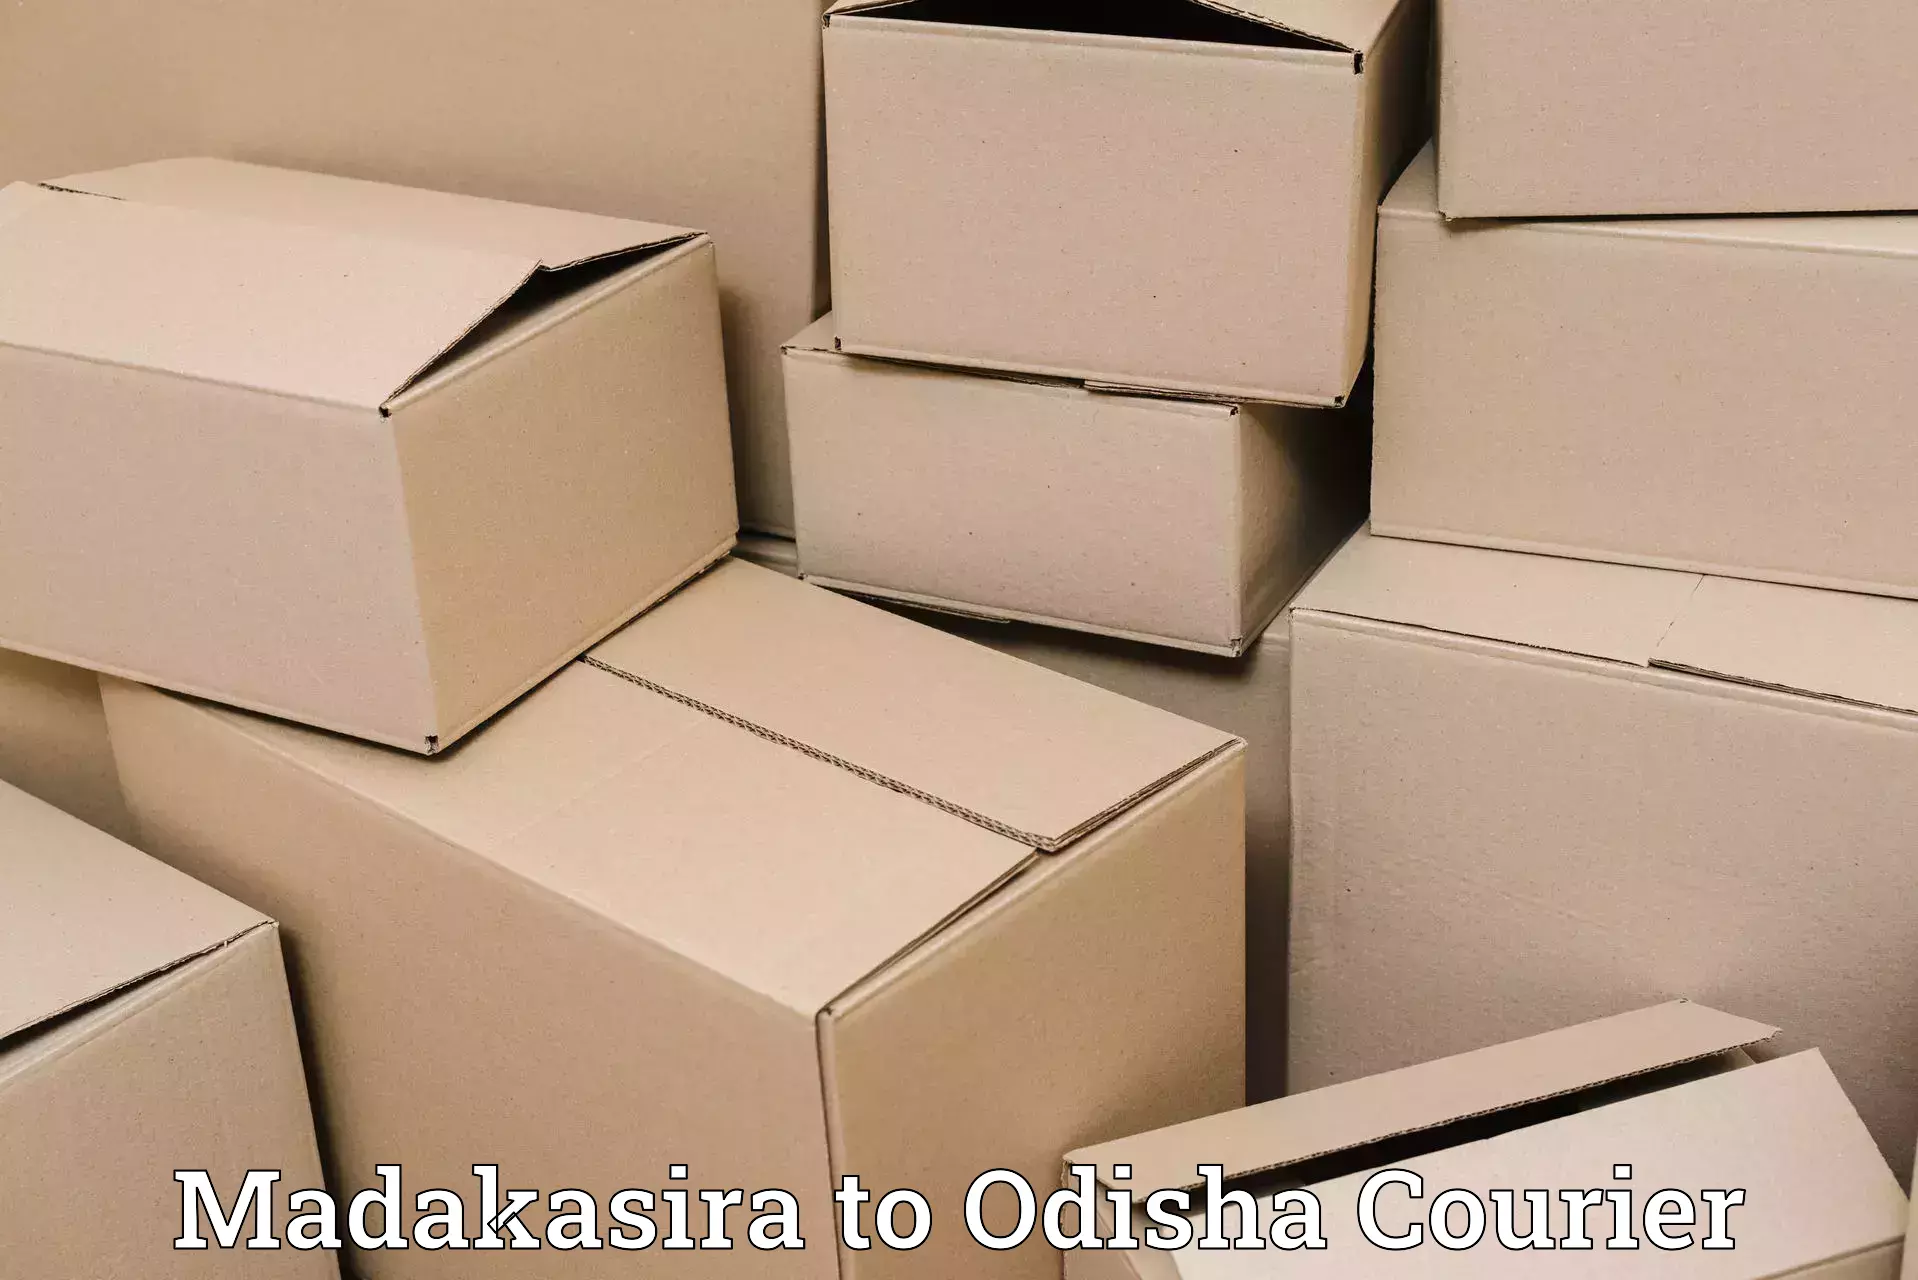 Nationwide parcel services Madakasira to Champua